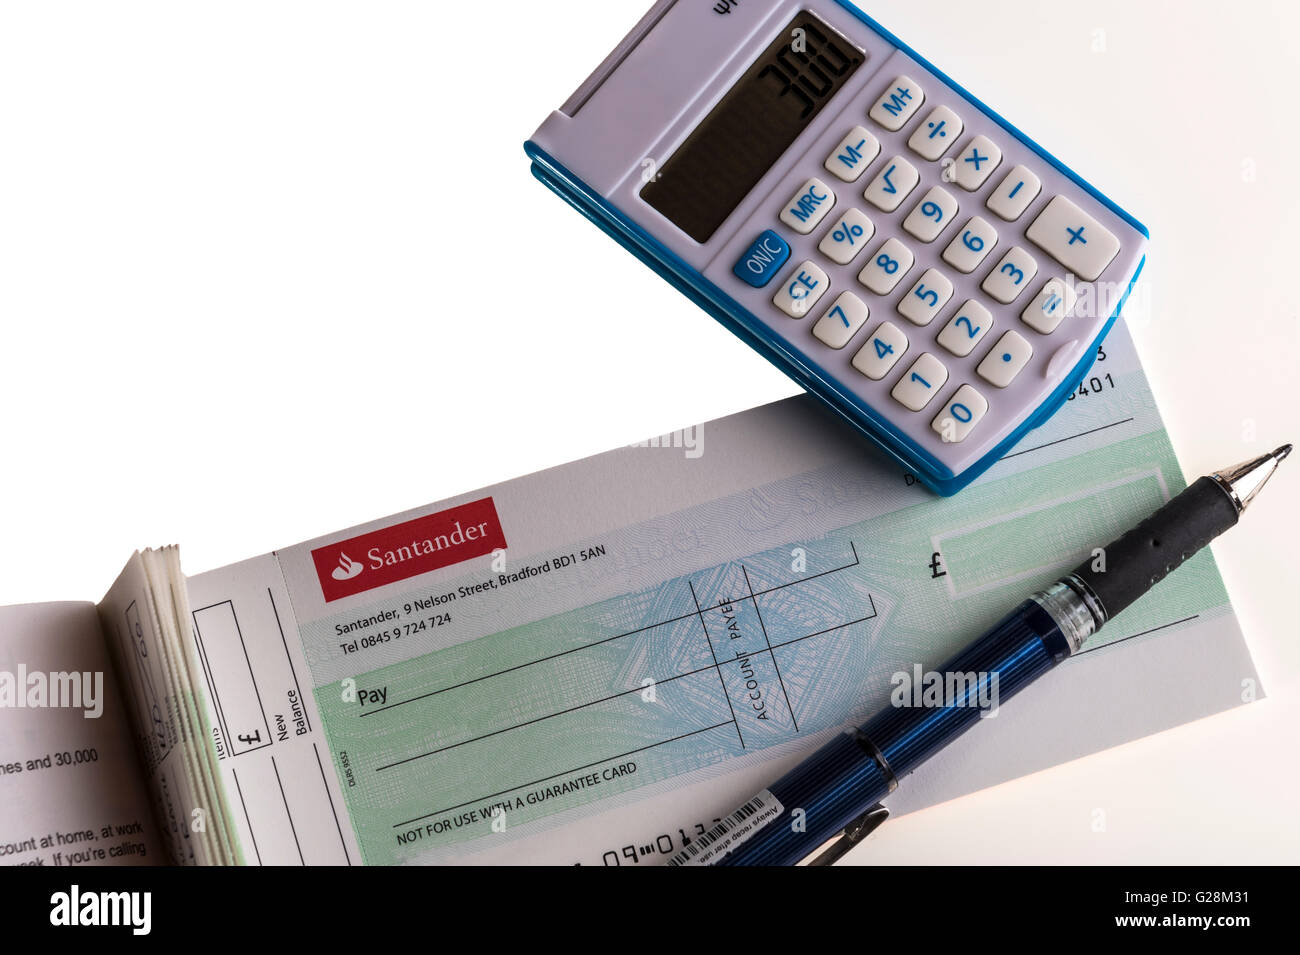 Cheque book and calculator. Stock Photo